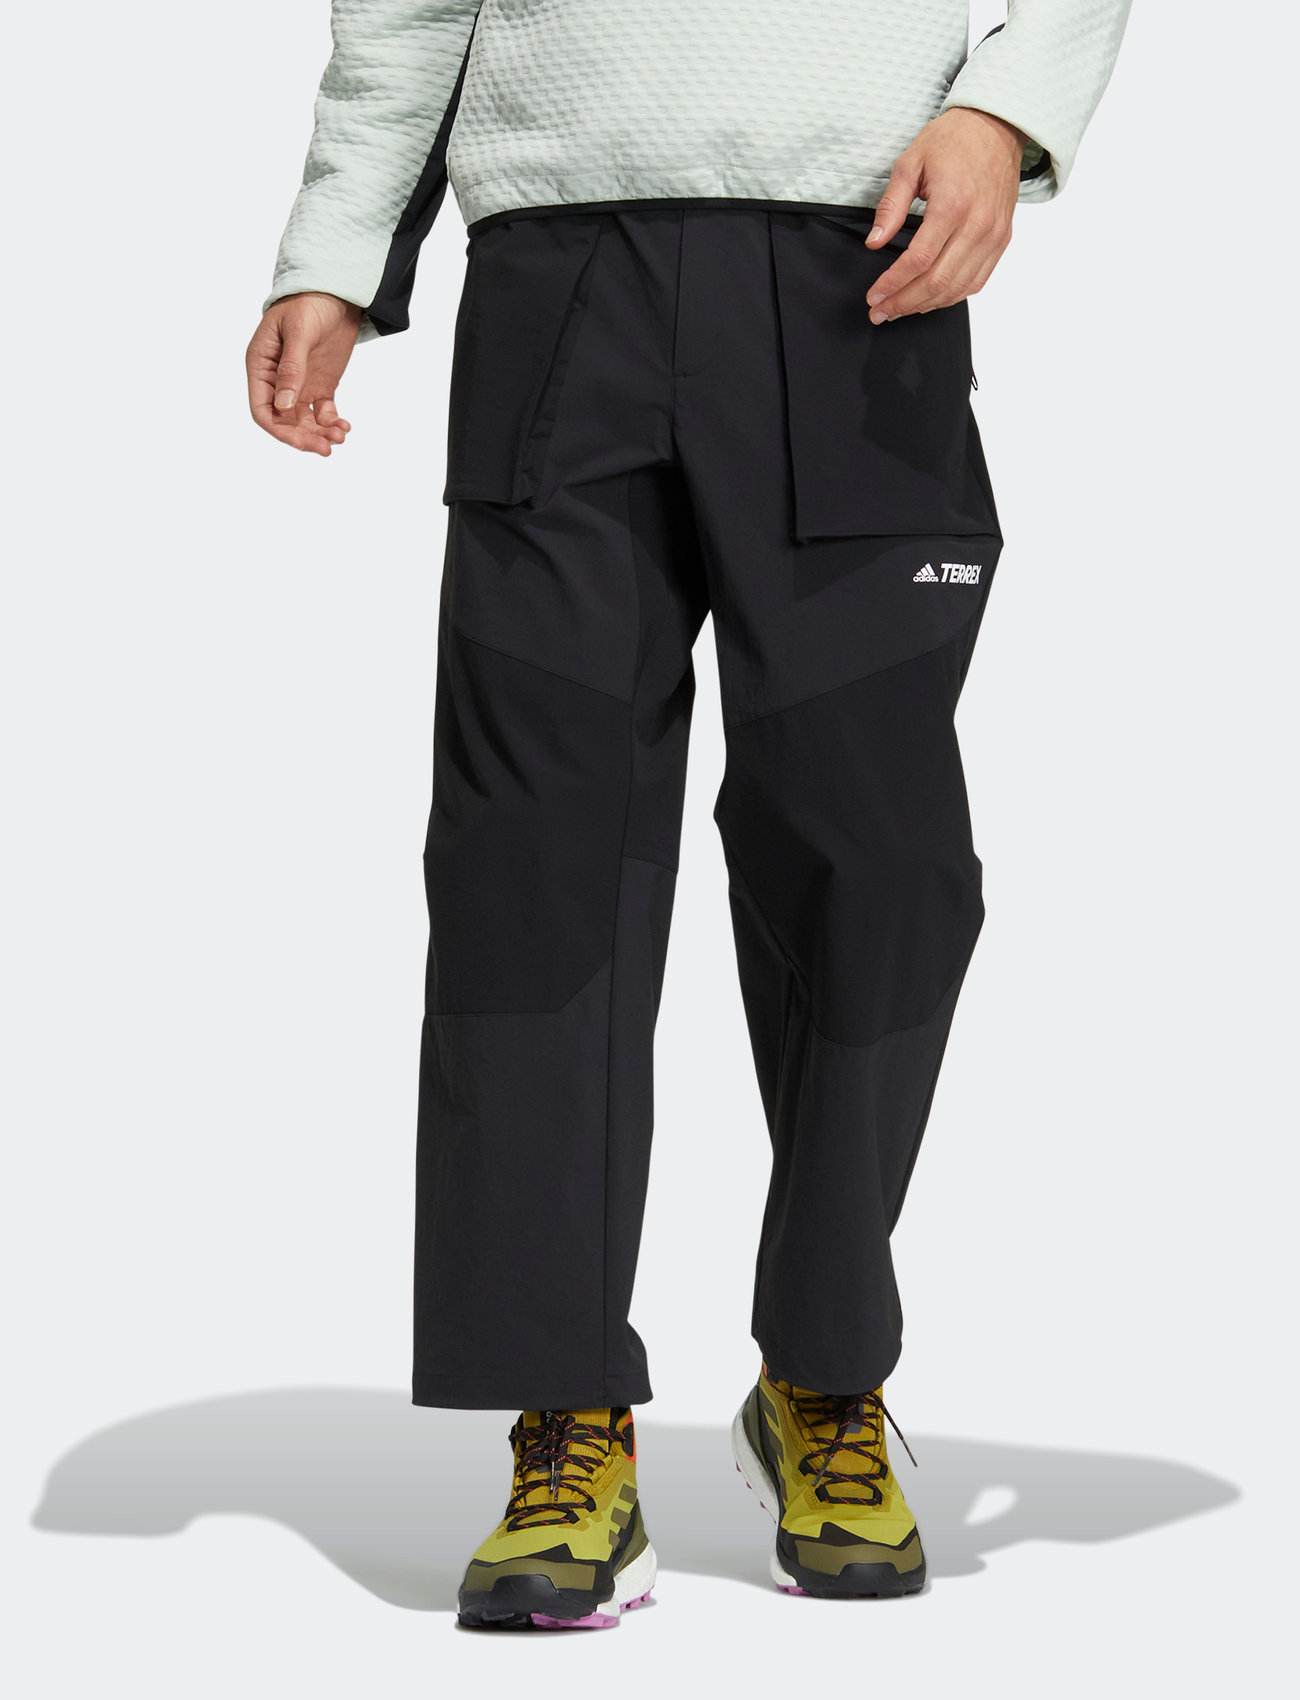 Adidas Terrex Terrex Trekking Primeknit Pants  Mountaineering trousers  Mens  Buy online  Bergfreundeeu